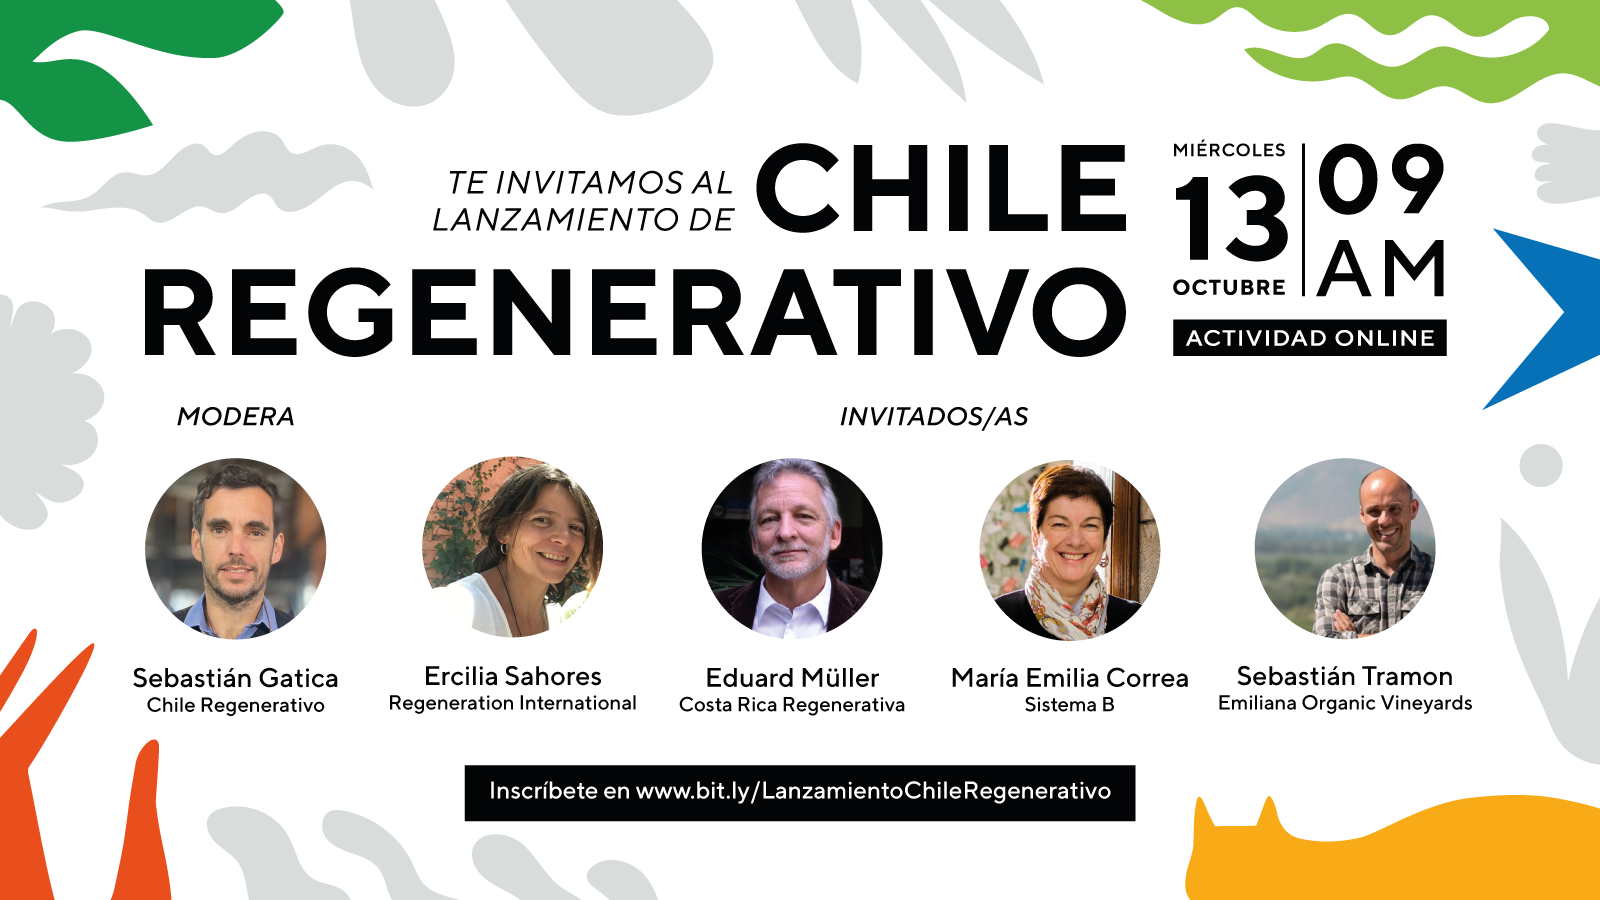  La iniciativa impulsada por CoLab UC y Fundación Kawoq se pondrá en marcha el 13 de octubre en una actividad online y con la presencia de importantes referentes de la regeneración en latinoamérica. 
